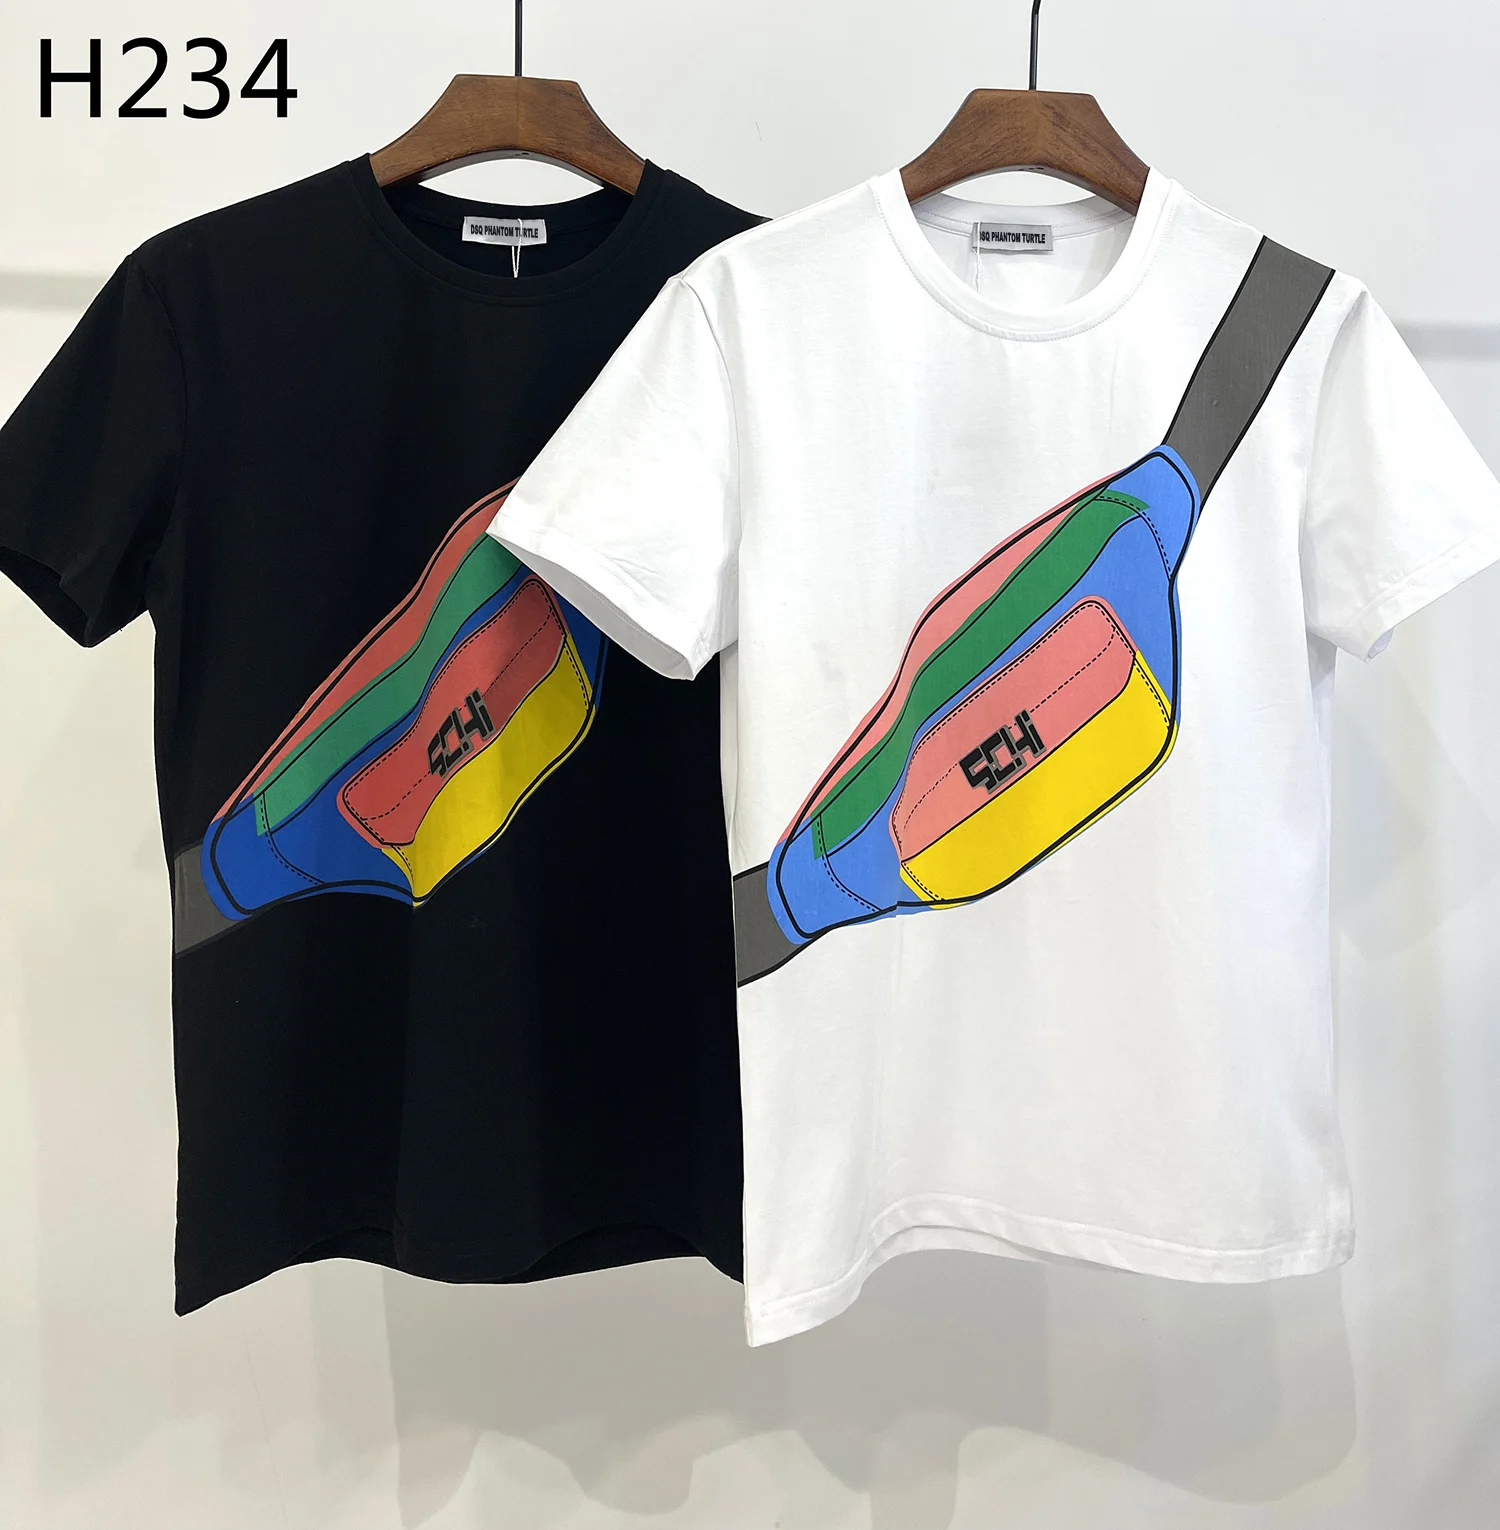 

DSQ PHANTOM TURTLE 2021 Summer New T-shirt Men Fashion Print 100% Cotton T Shirts Breathable Quality Tees H234